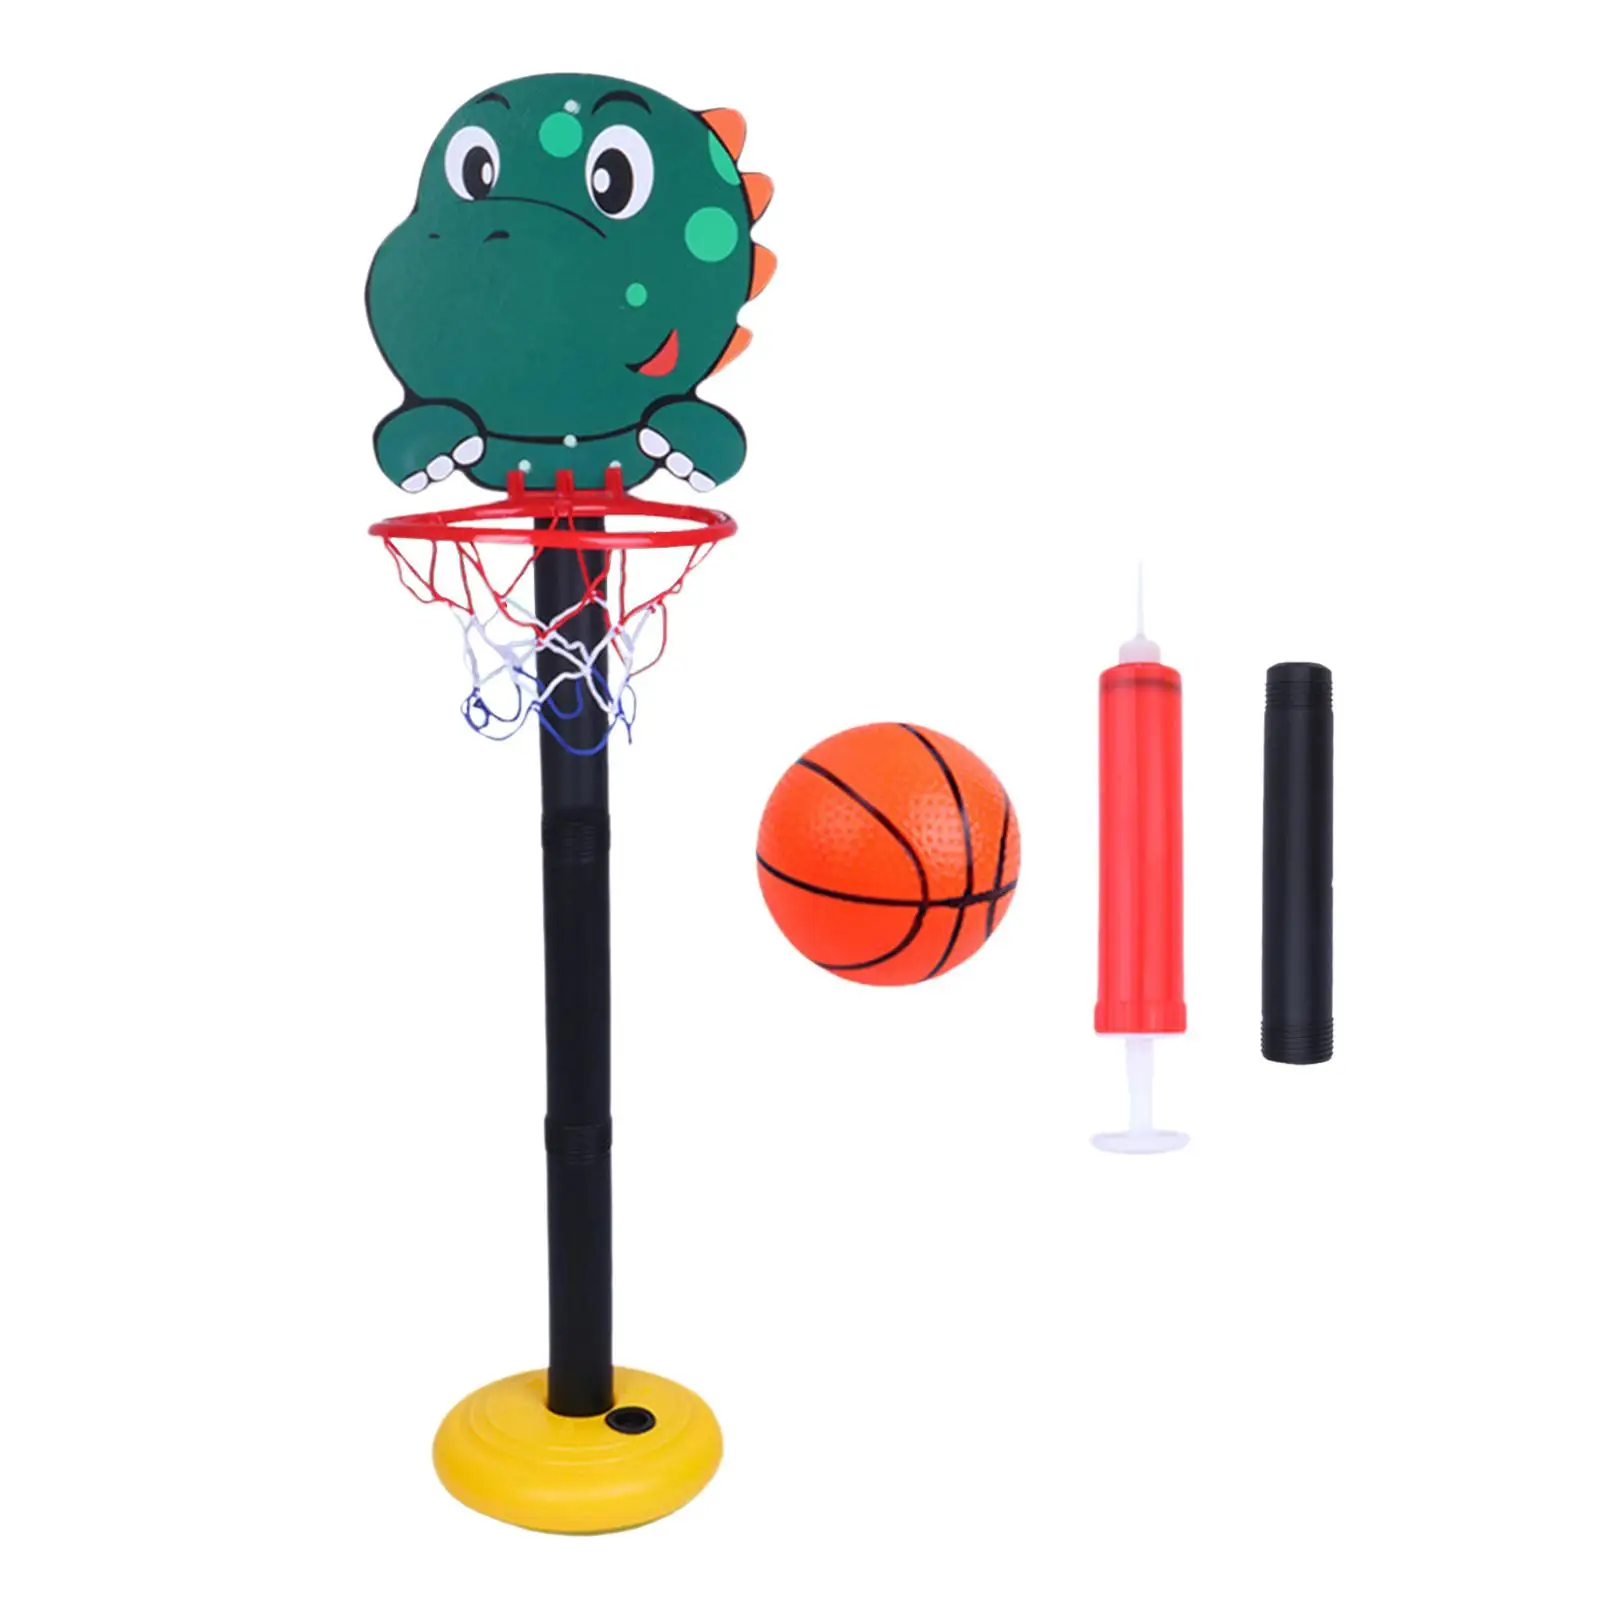 Portable Basketball Toys Outside Garden game Mini Basketball Set for Indoor Bathroom Door wall